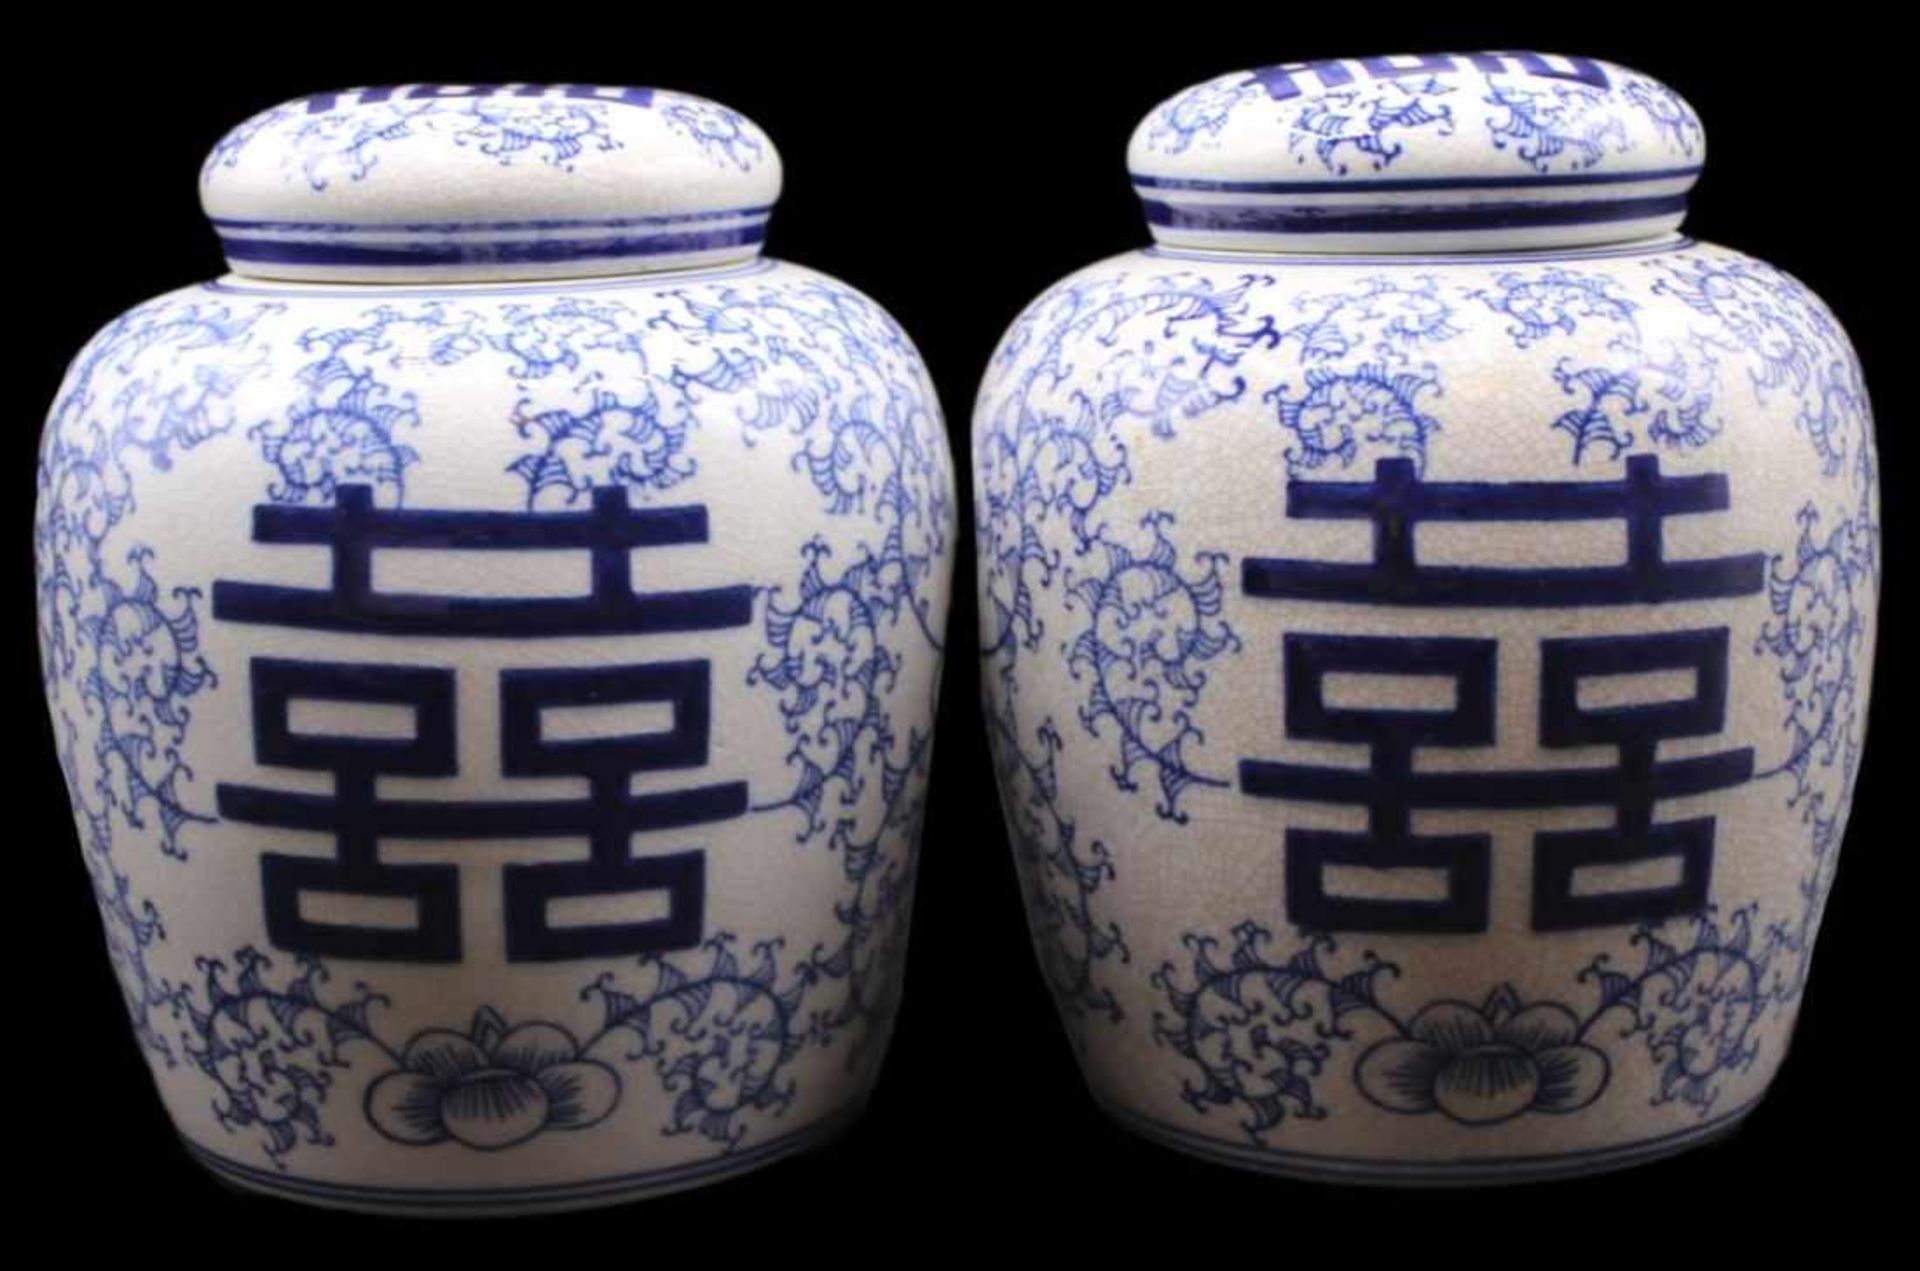 Paar Deckelvasen - China 20.Jahrhundert Porzellan glasiert und in Blau staffiert, verziert mit